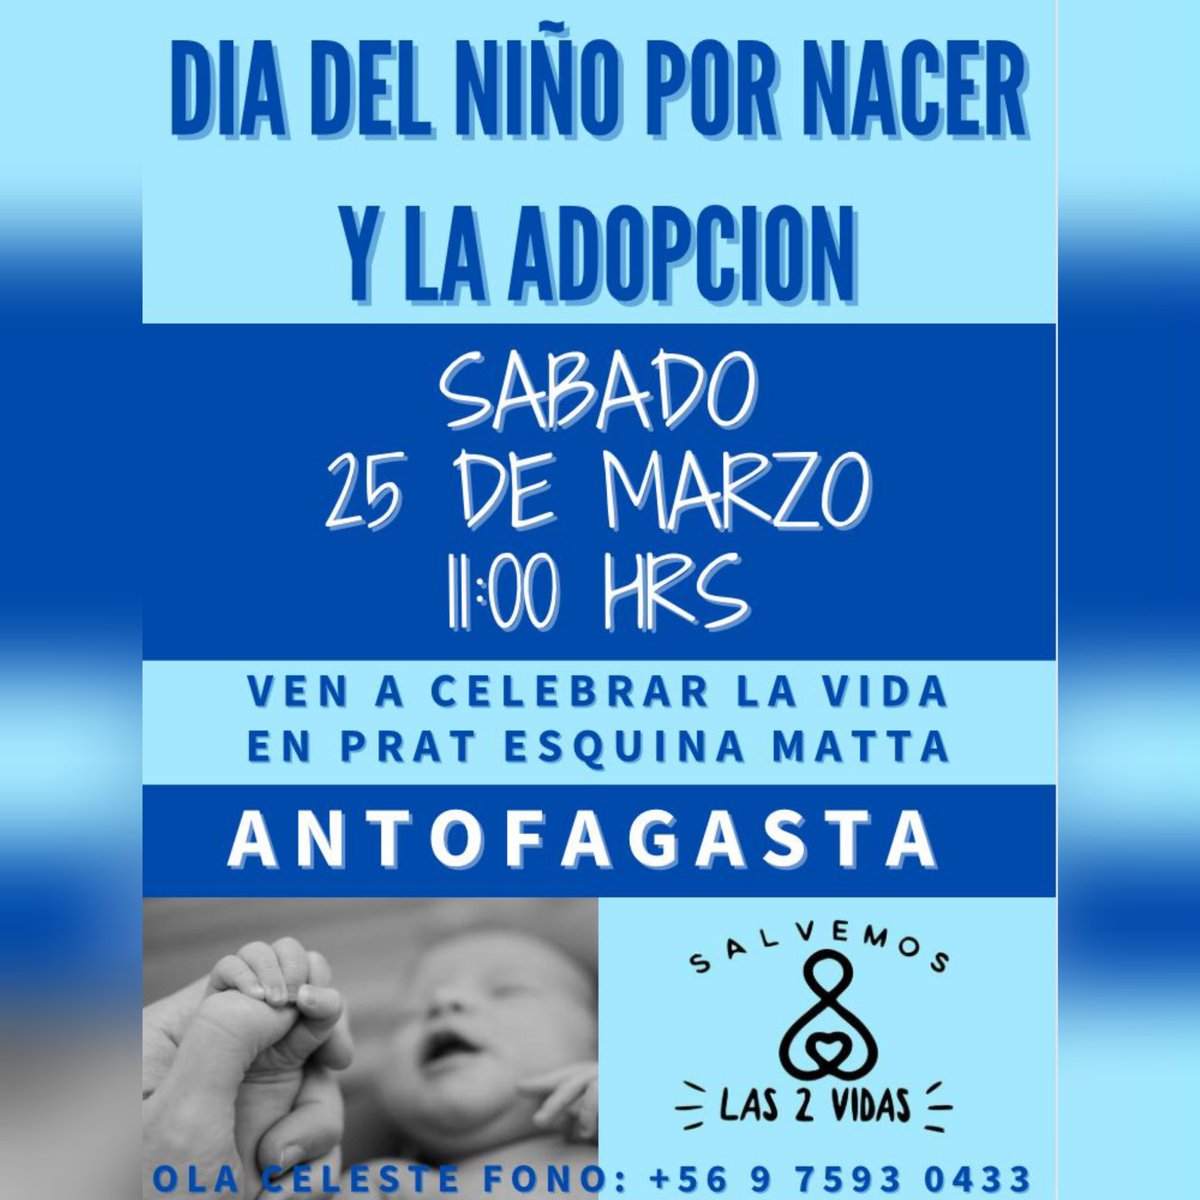 Hoy en Antofagasta tenemos preparada está hermosa actividad. 
Es muy importante #ResguardarLaVida del bebe que está por Nacer y también contener y dar apoyo a todas las mujeres que pasan por el proceso solas. 
Es importante que #SalvemosLas2Vidas  
#DefendamosLaVida #Antofagasta